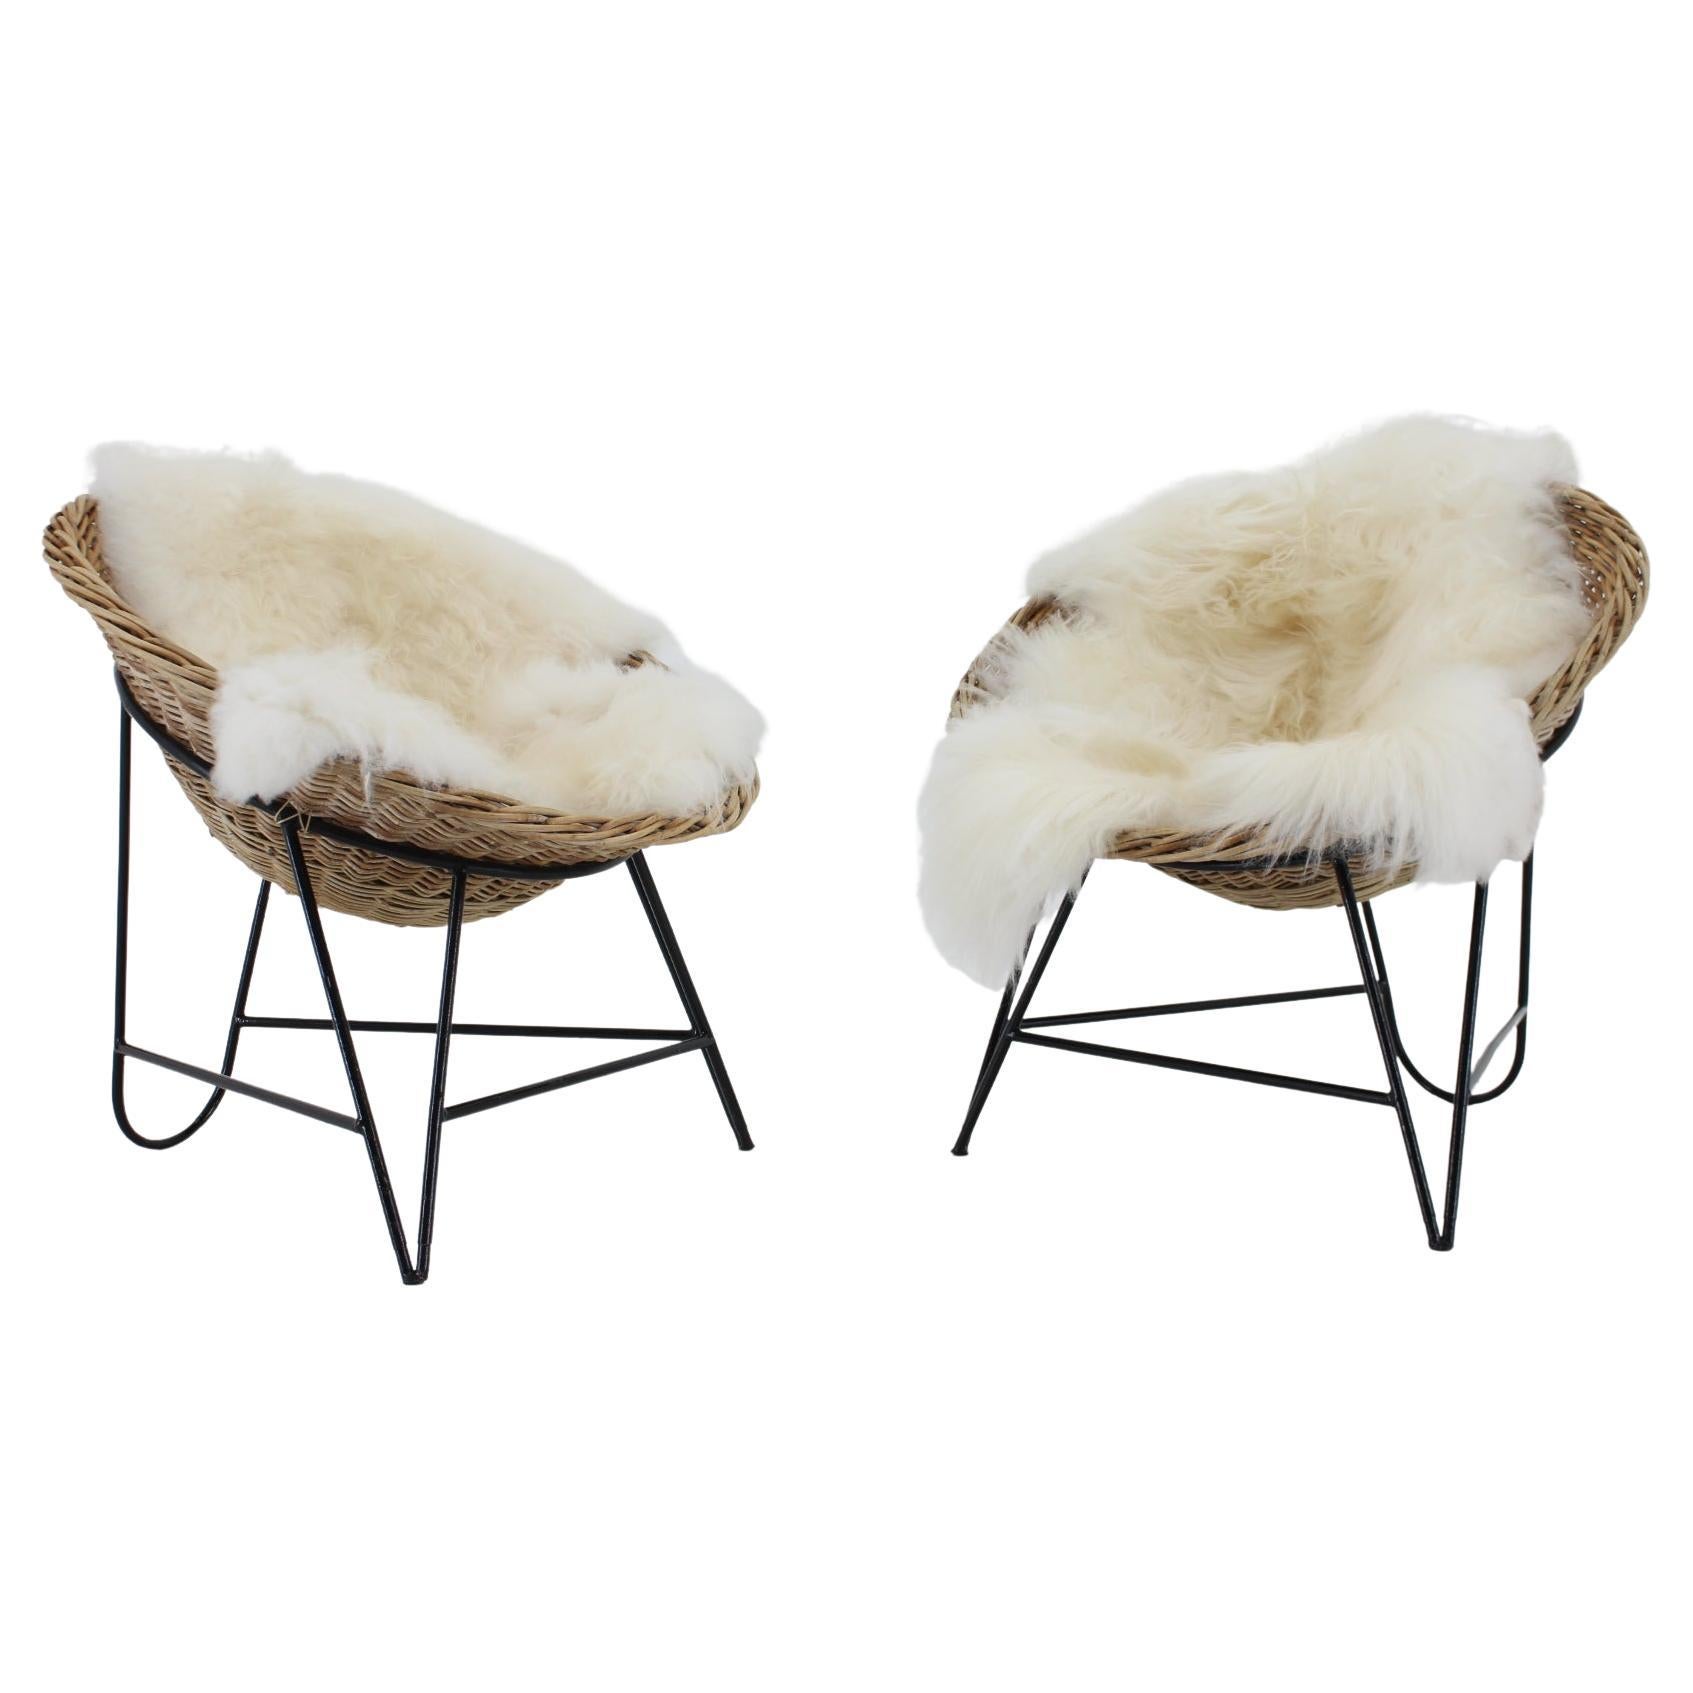 Paire de chaises paniers en rotin tressé avec peau de mouton islandaise des années 1960